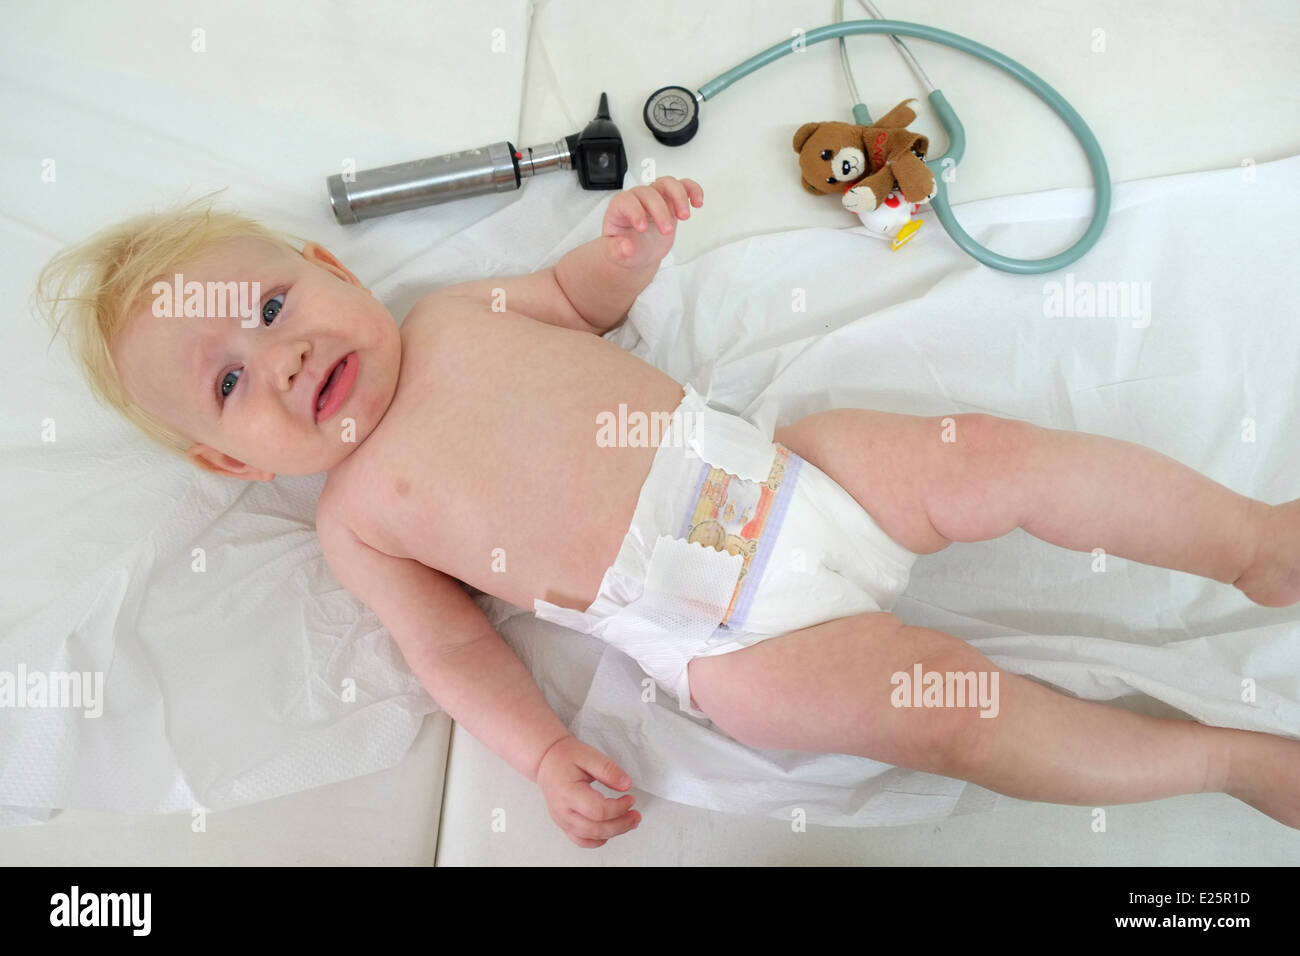 Un bébé qui pleure lors d'une visite de routine chez le médecin Banque D'Images